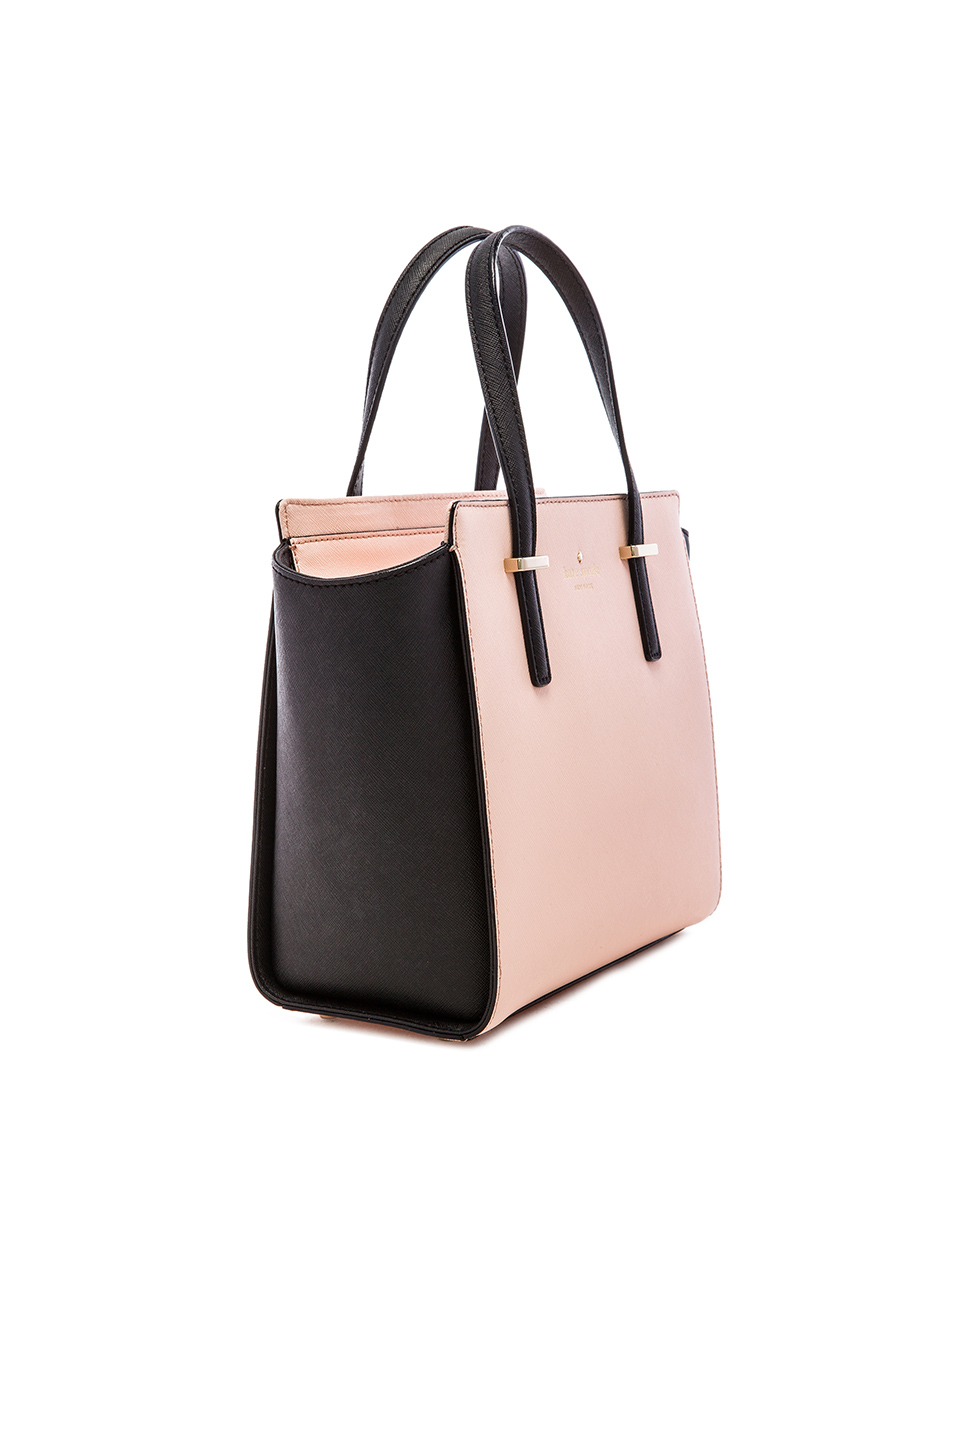 Kate Spade Small Hayden Shoulder Bag in Pink - Lyst